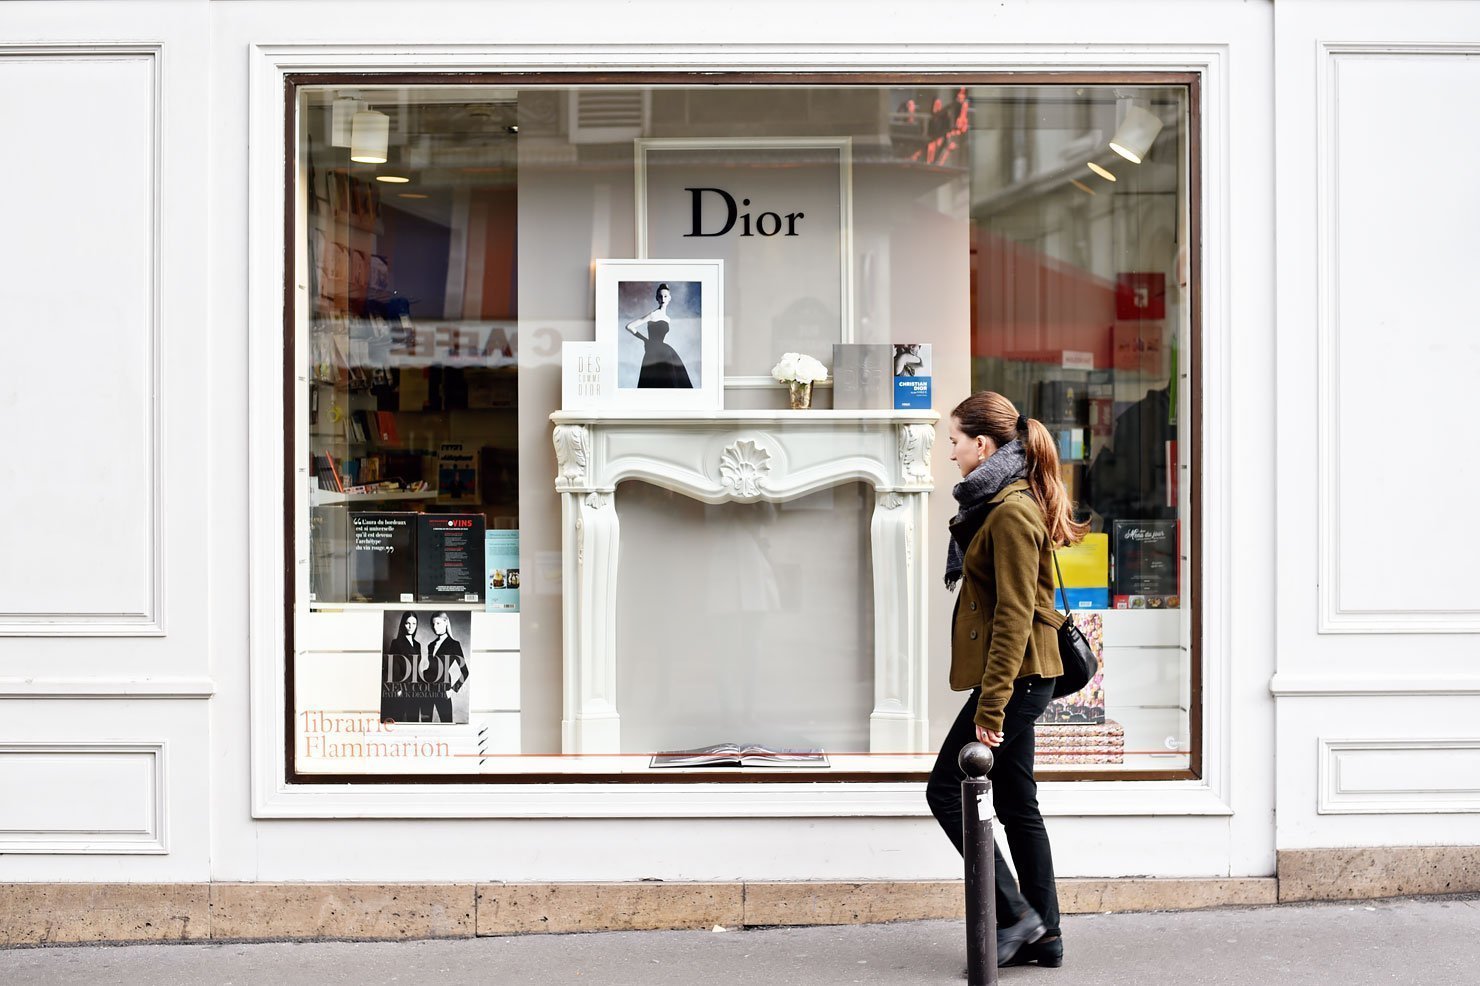 Paris windows - Dior